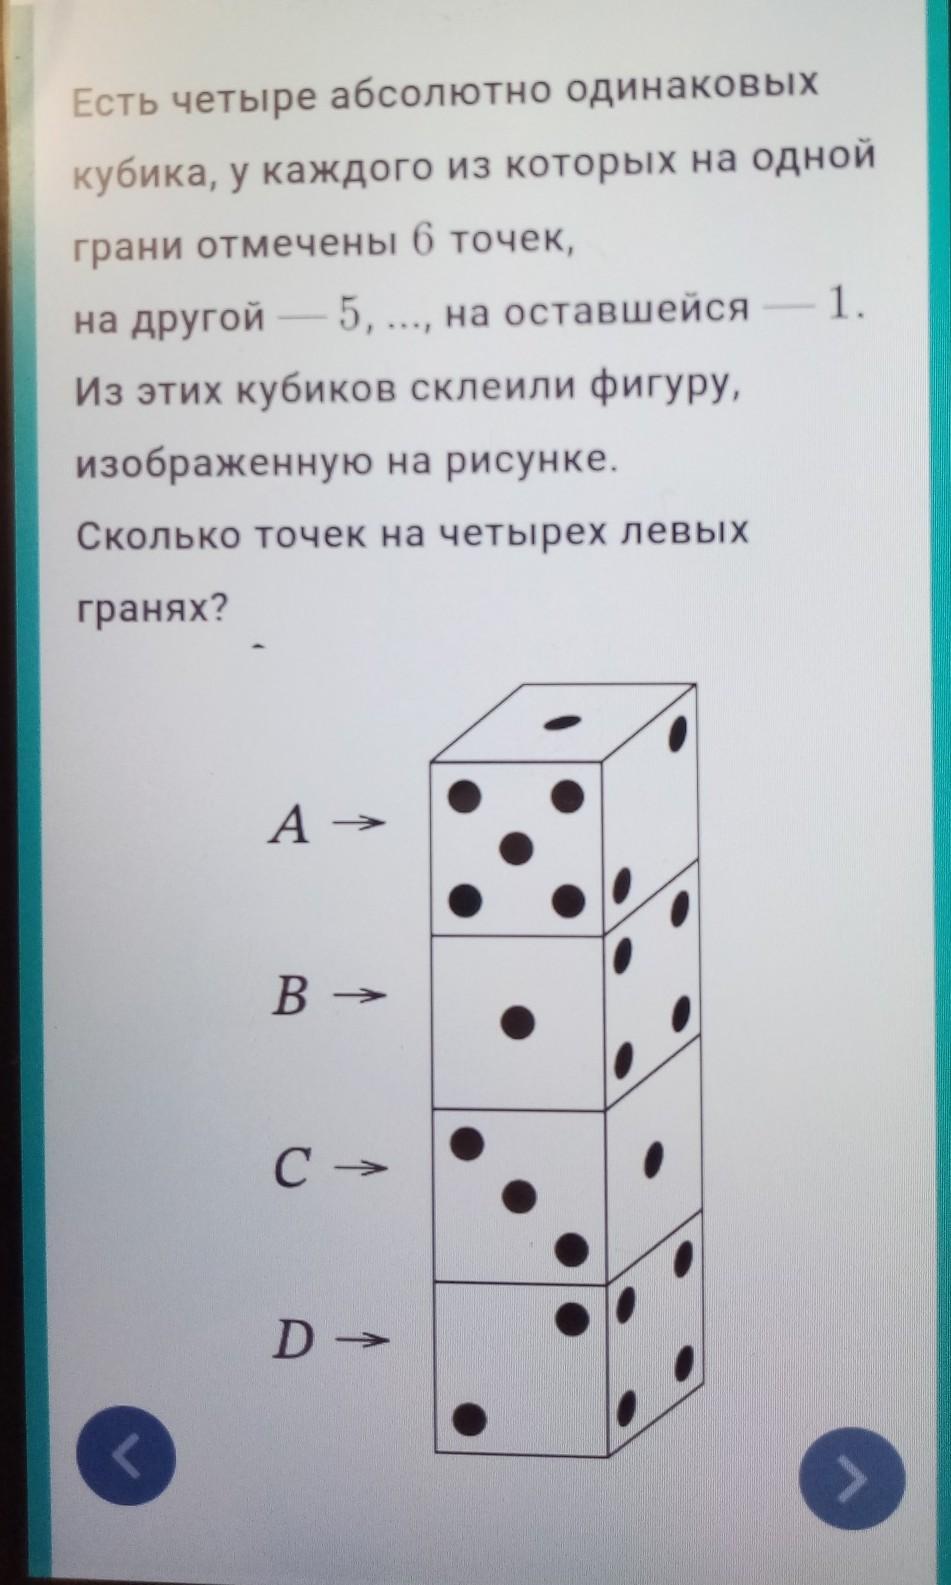 На столе лежат три абсолютно одинаковых кубика. Грани кубика с точками. Есть 4 абсолютно одинаковых кубика. Кубик с 6 точками. Есть четыре абсолютно одинаковых кубика у каждого из которых.